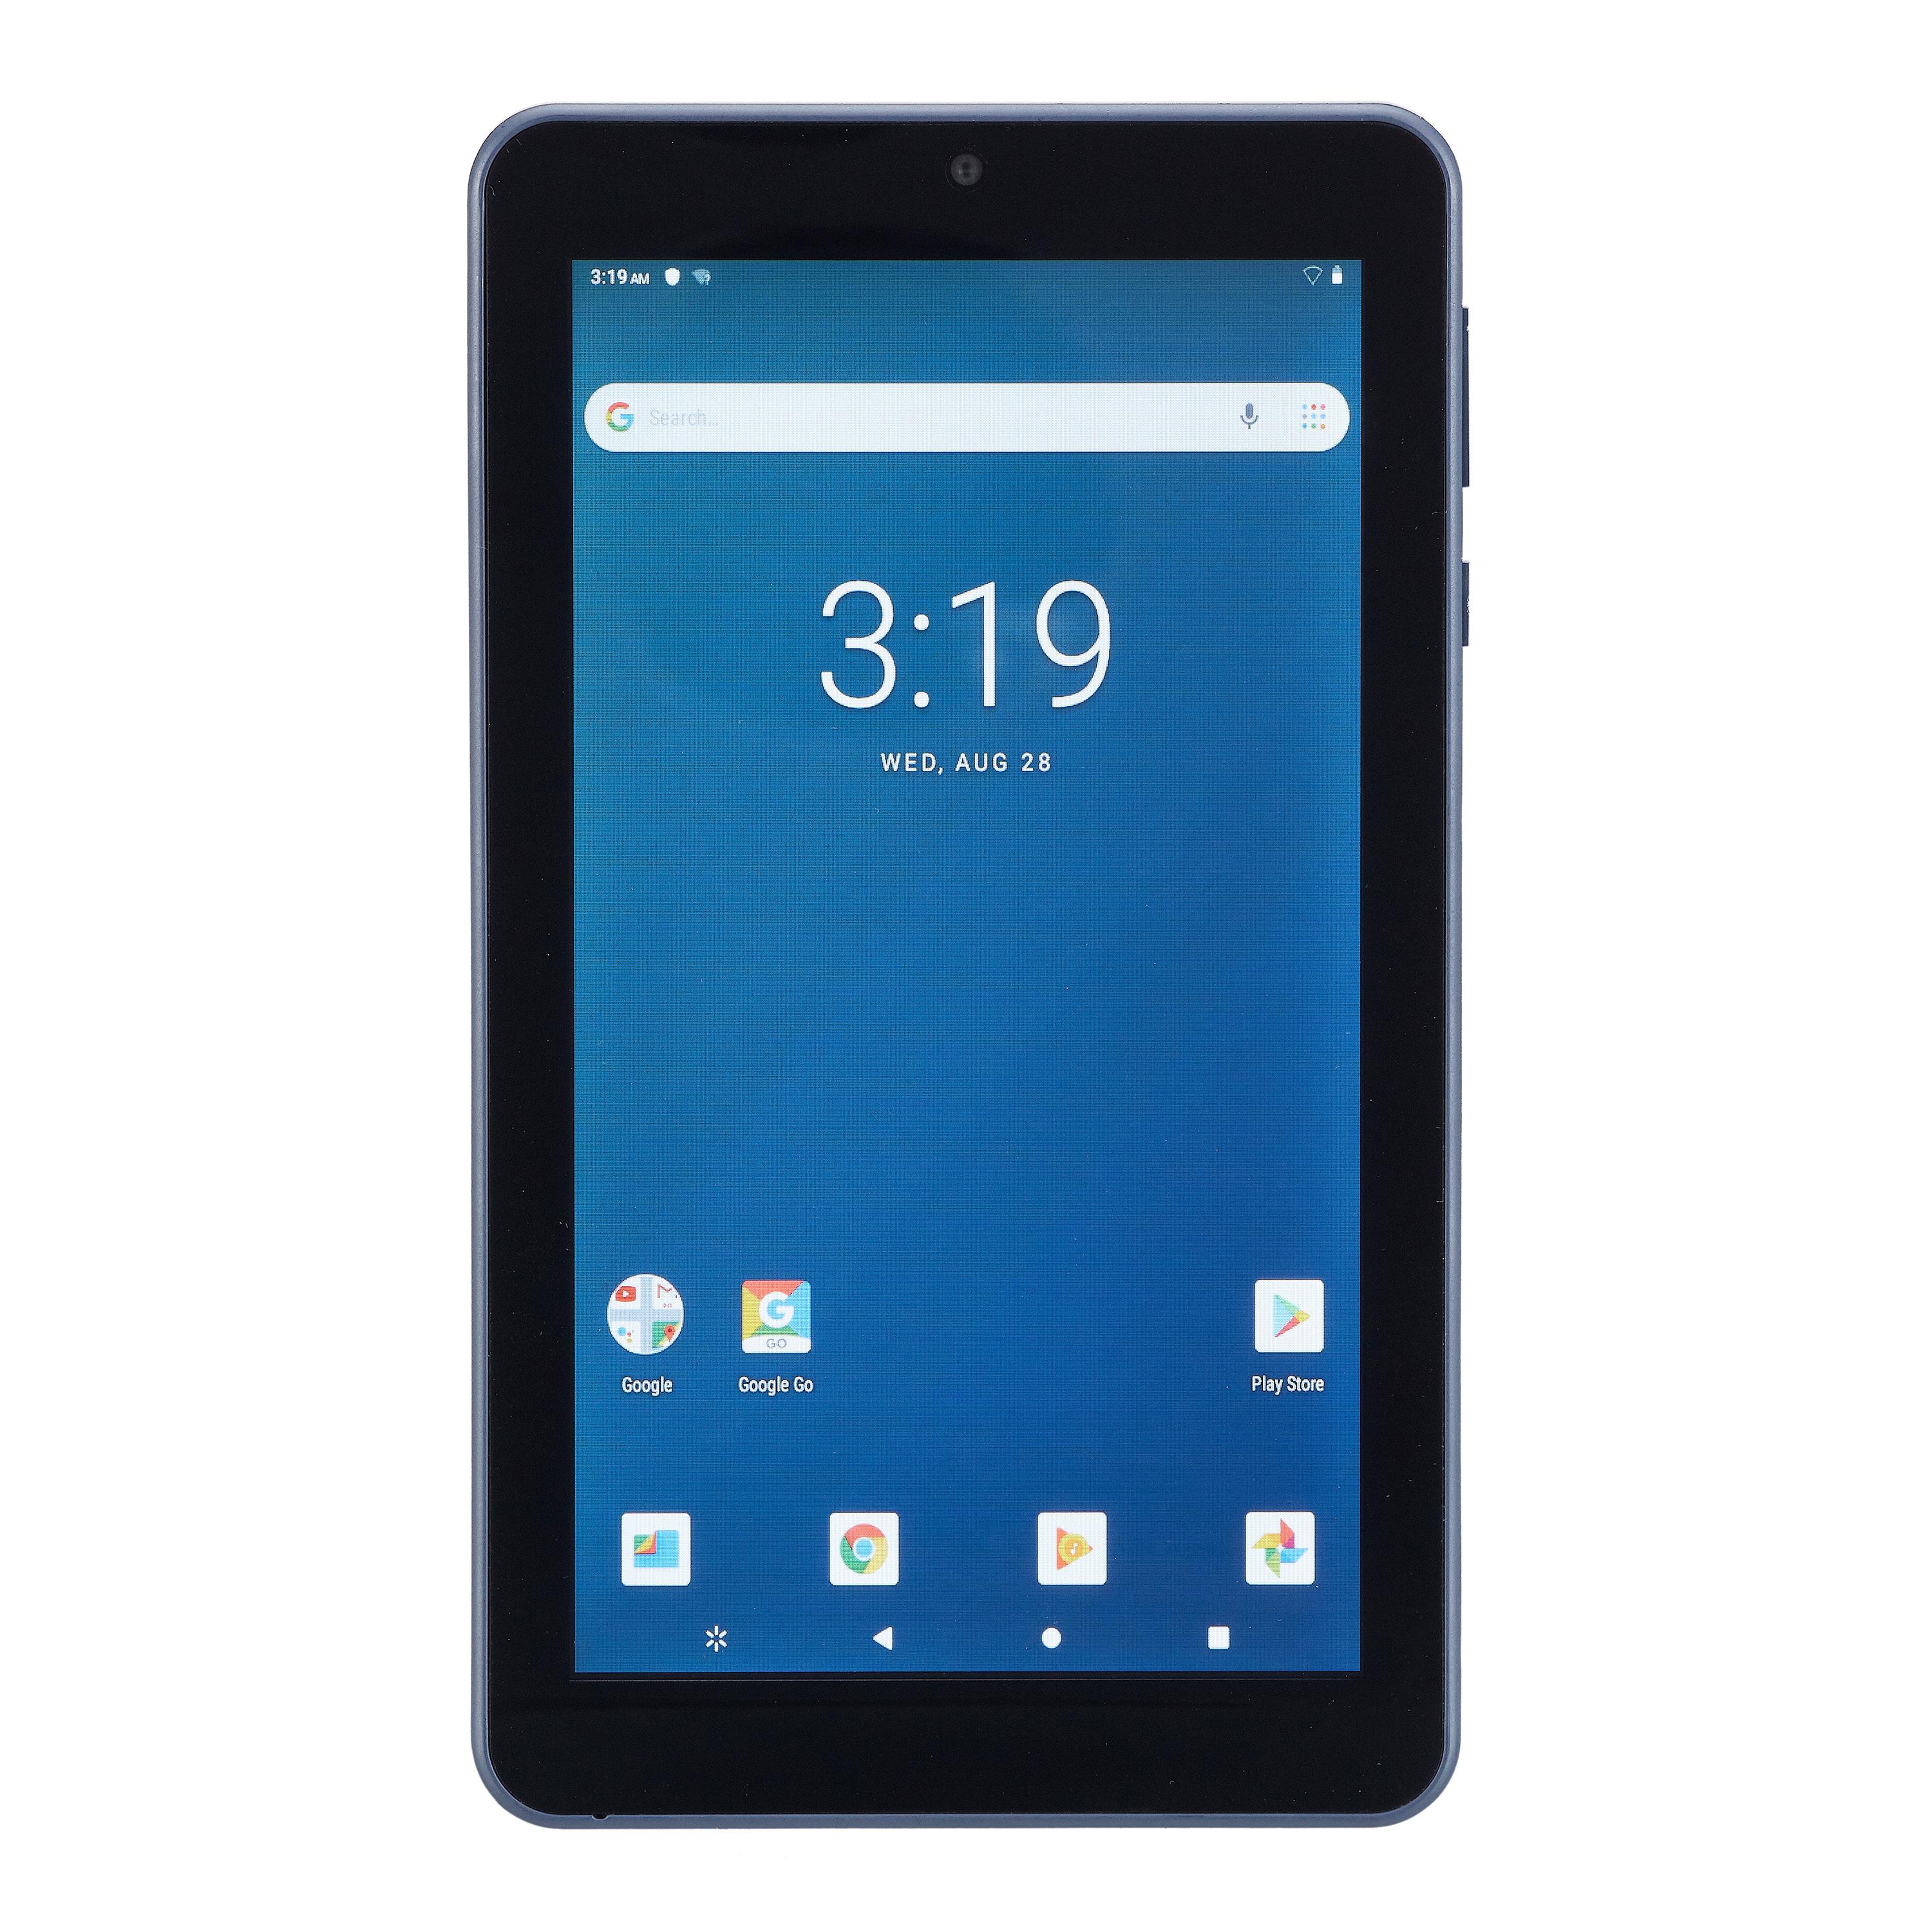 onn. 7" Tablet 16GB Android- Bonus $10 off Walmart eBooks Included - image 1 of 4